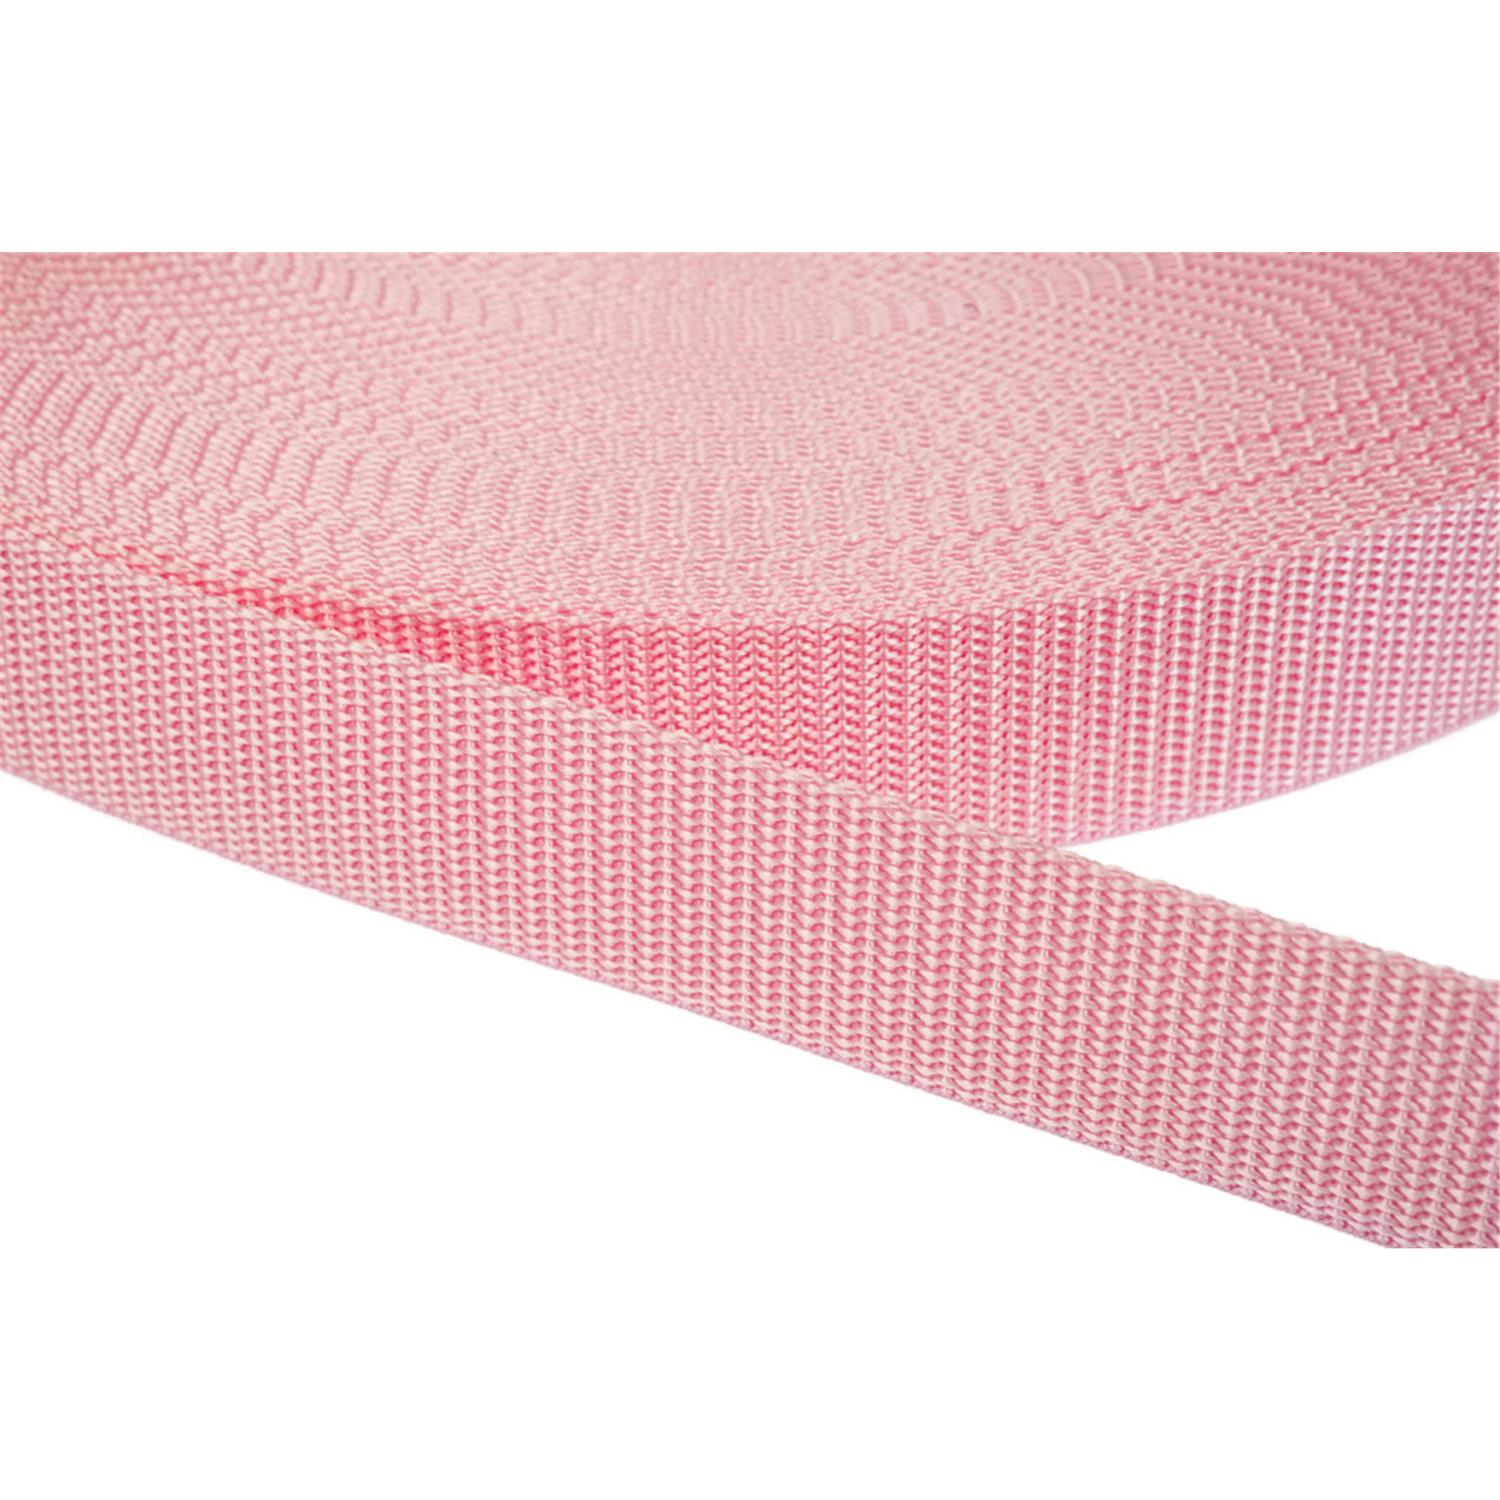 Gurtband 30mm breit aus Polypropylen in 41 Farben 12 - rosa 6 Meter